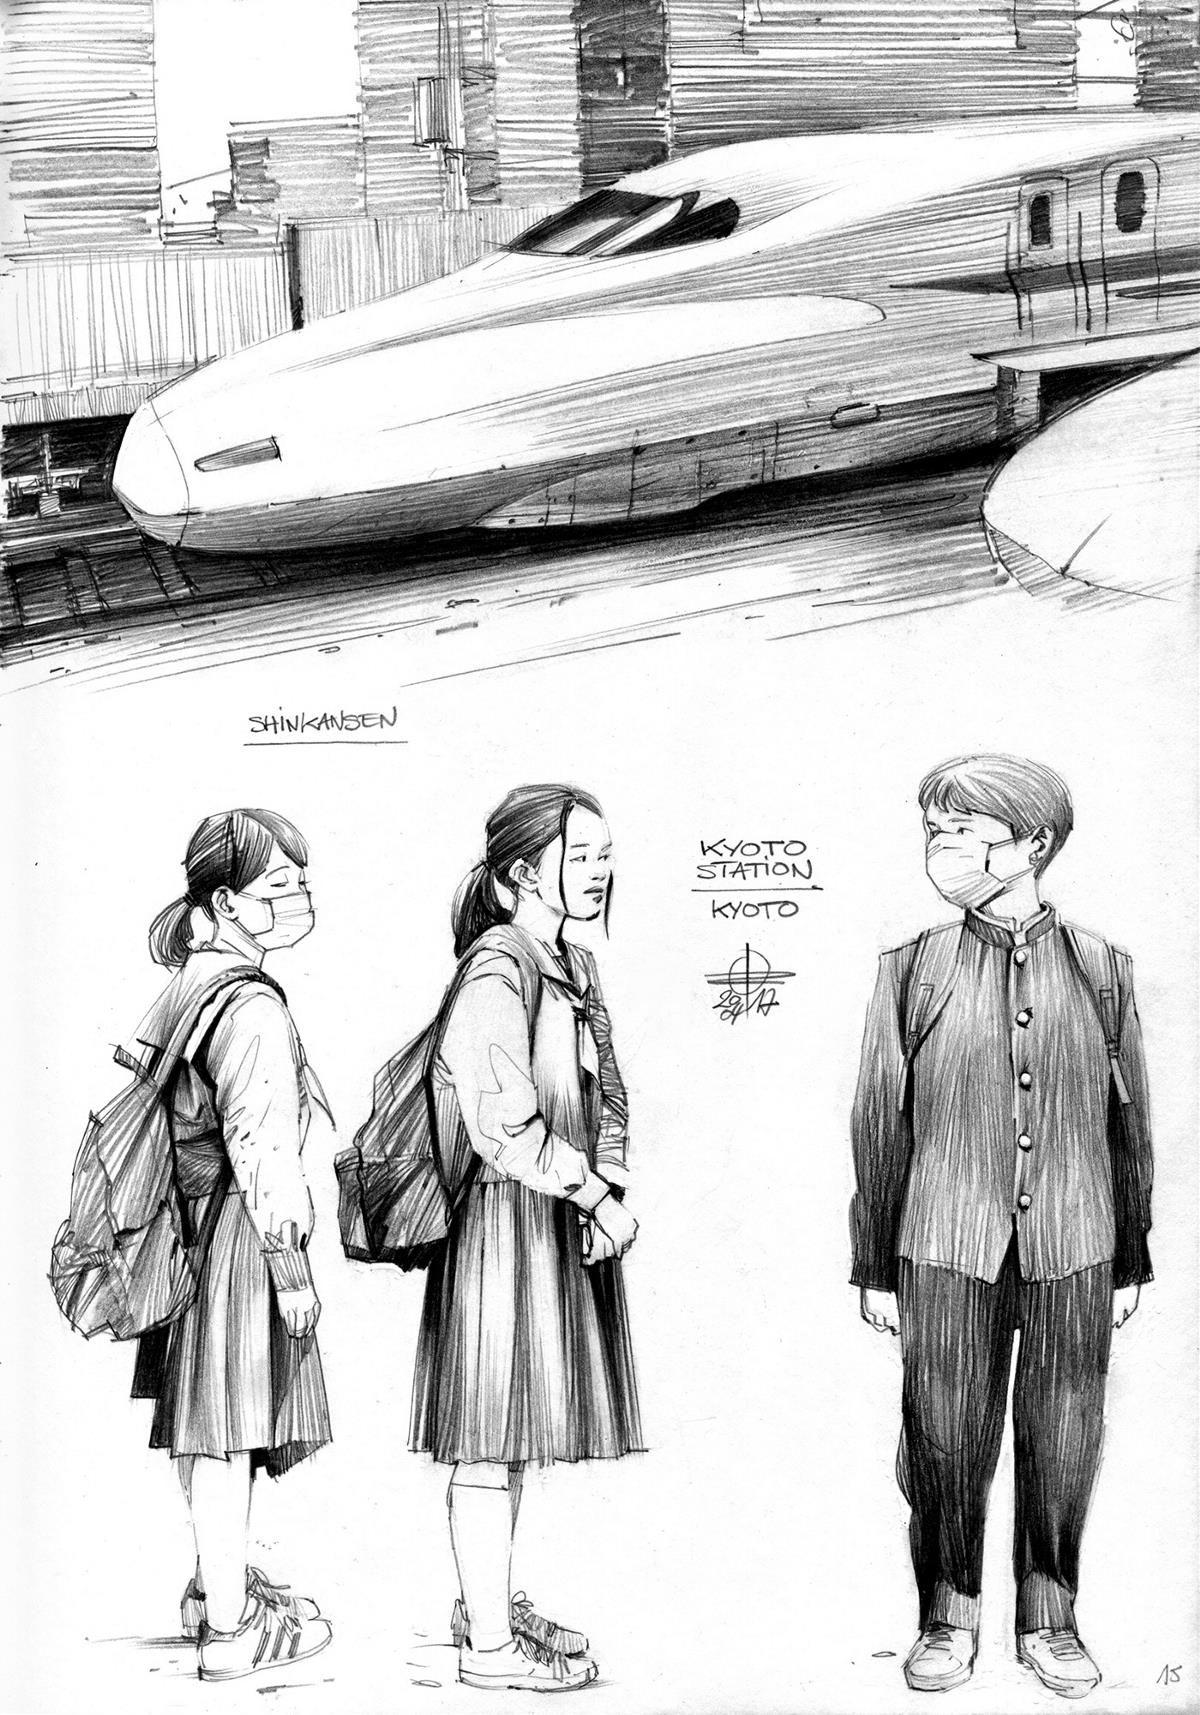 Journey Sketchbook插画欣赏